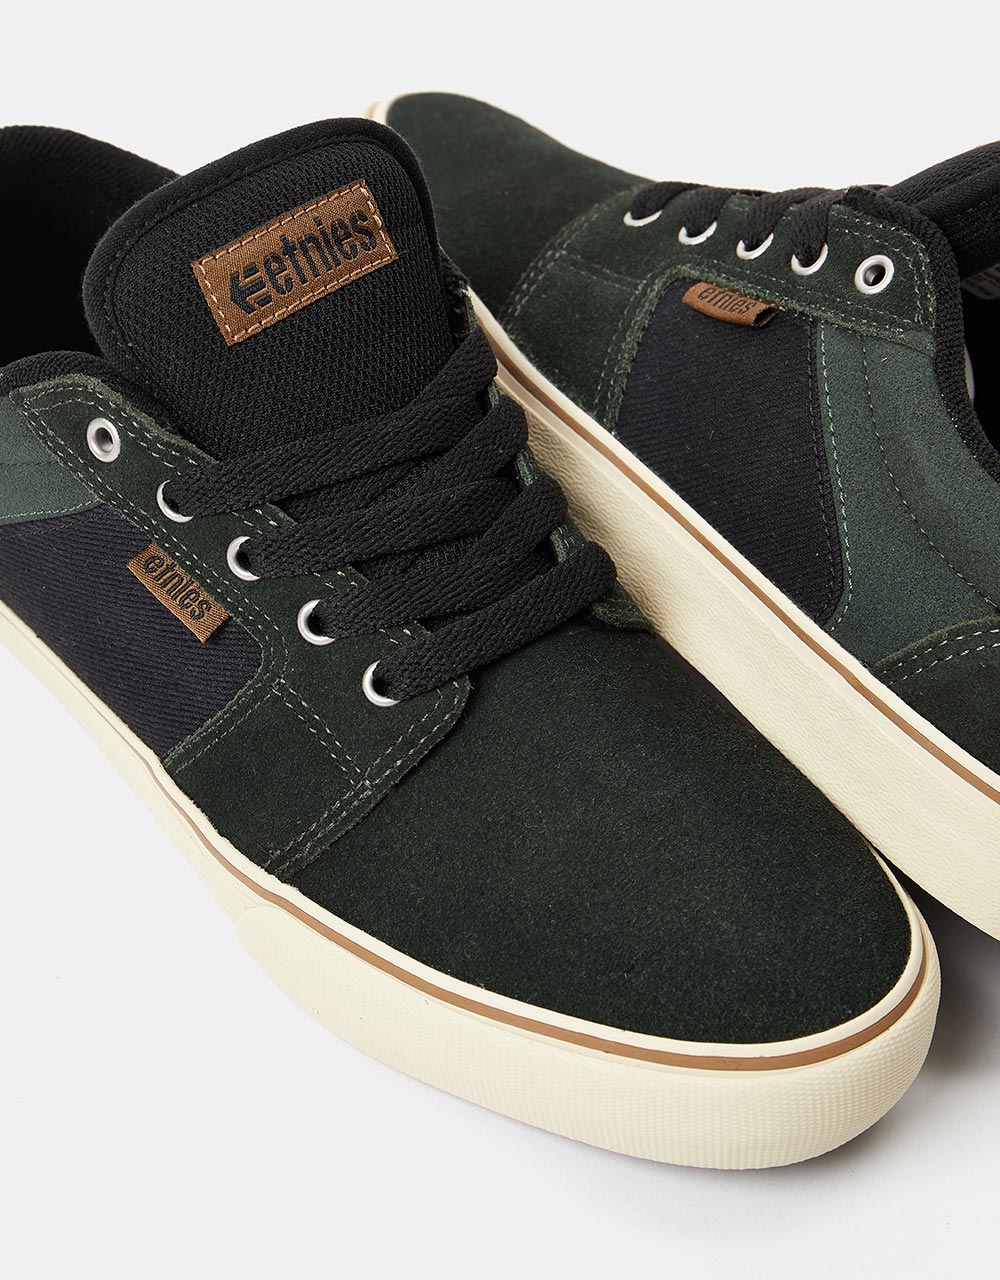 Etnies Barge LS Skate Shoes - Green/Black